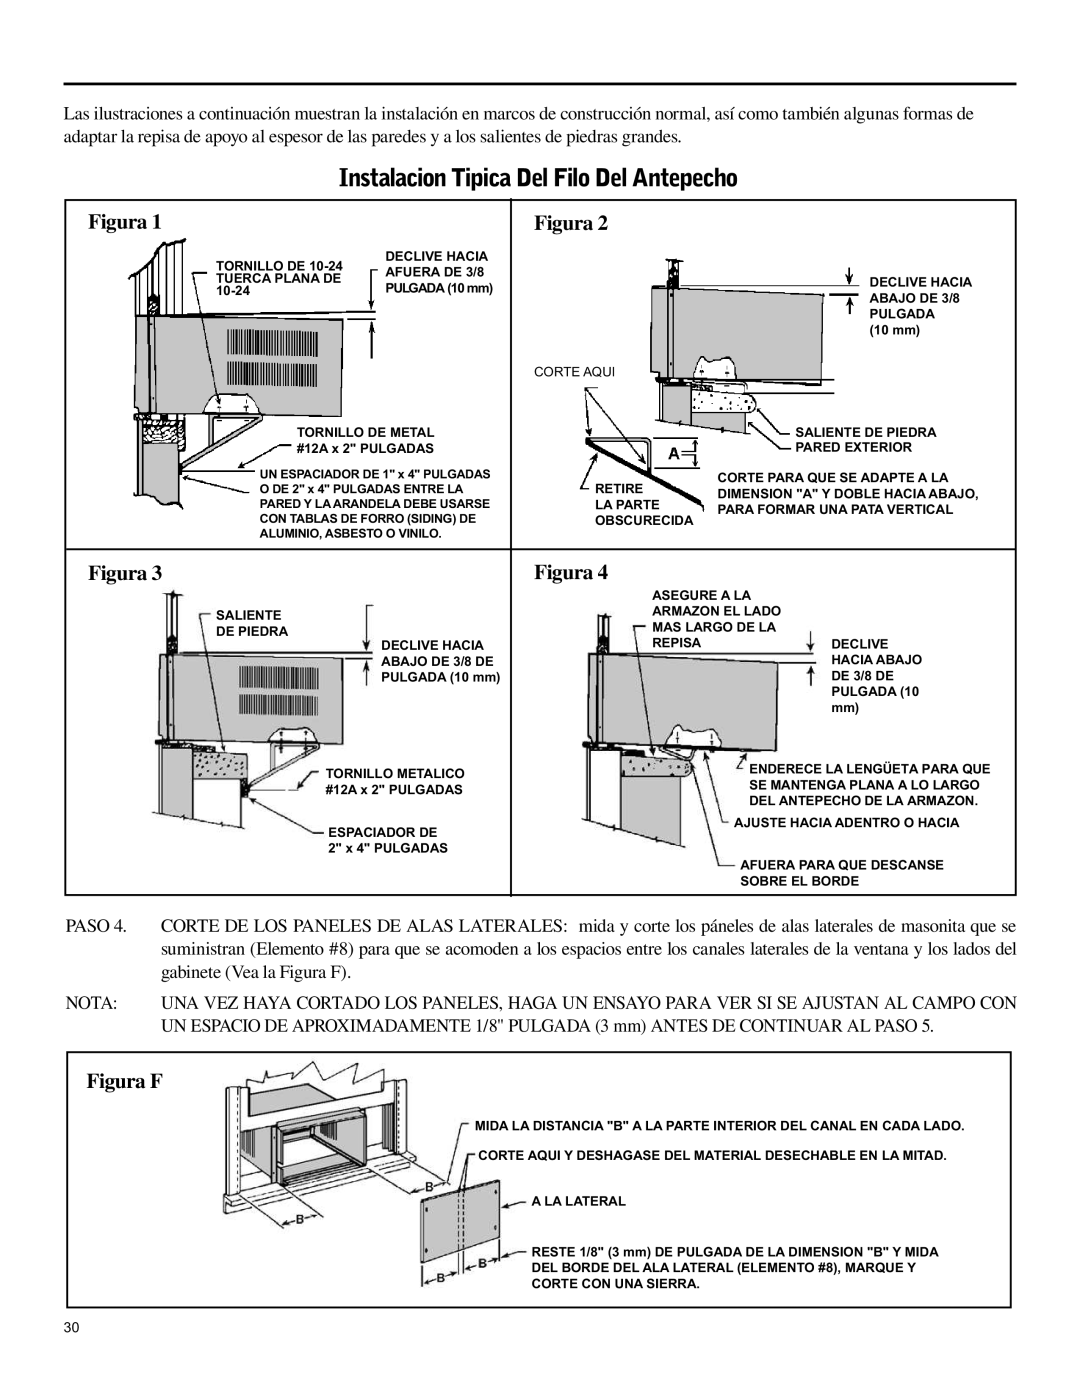 Friedrich SH15 operation manual Instalacion Tipica Del Filo Del Antepecho, Paso, gabinete Vea la Figura F, Nota 